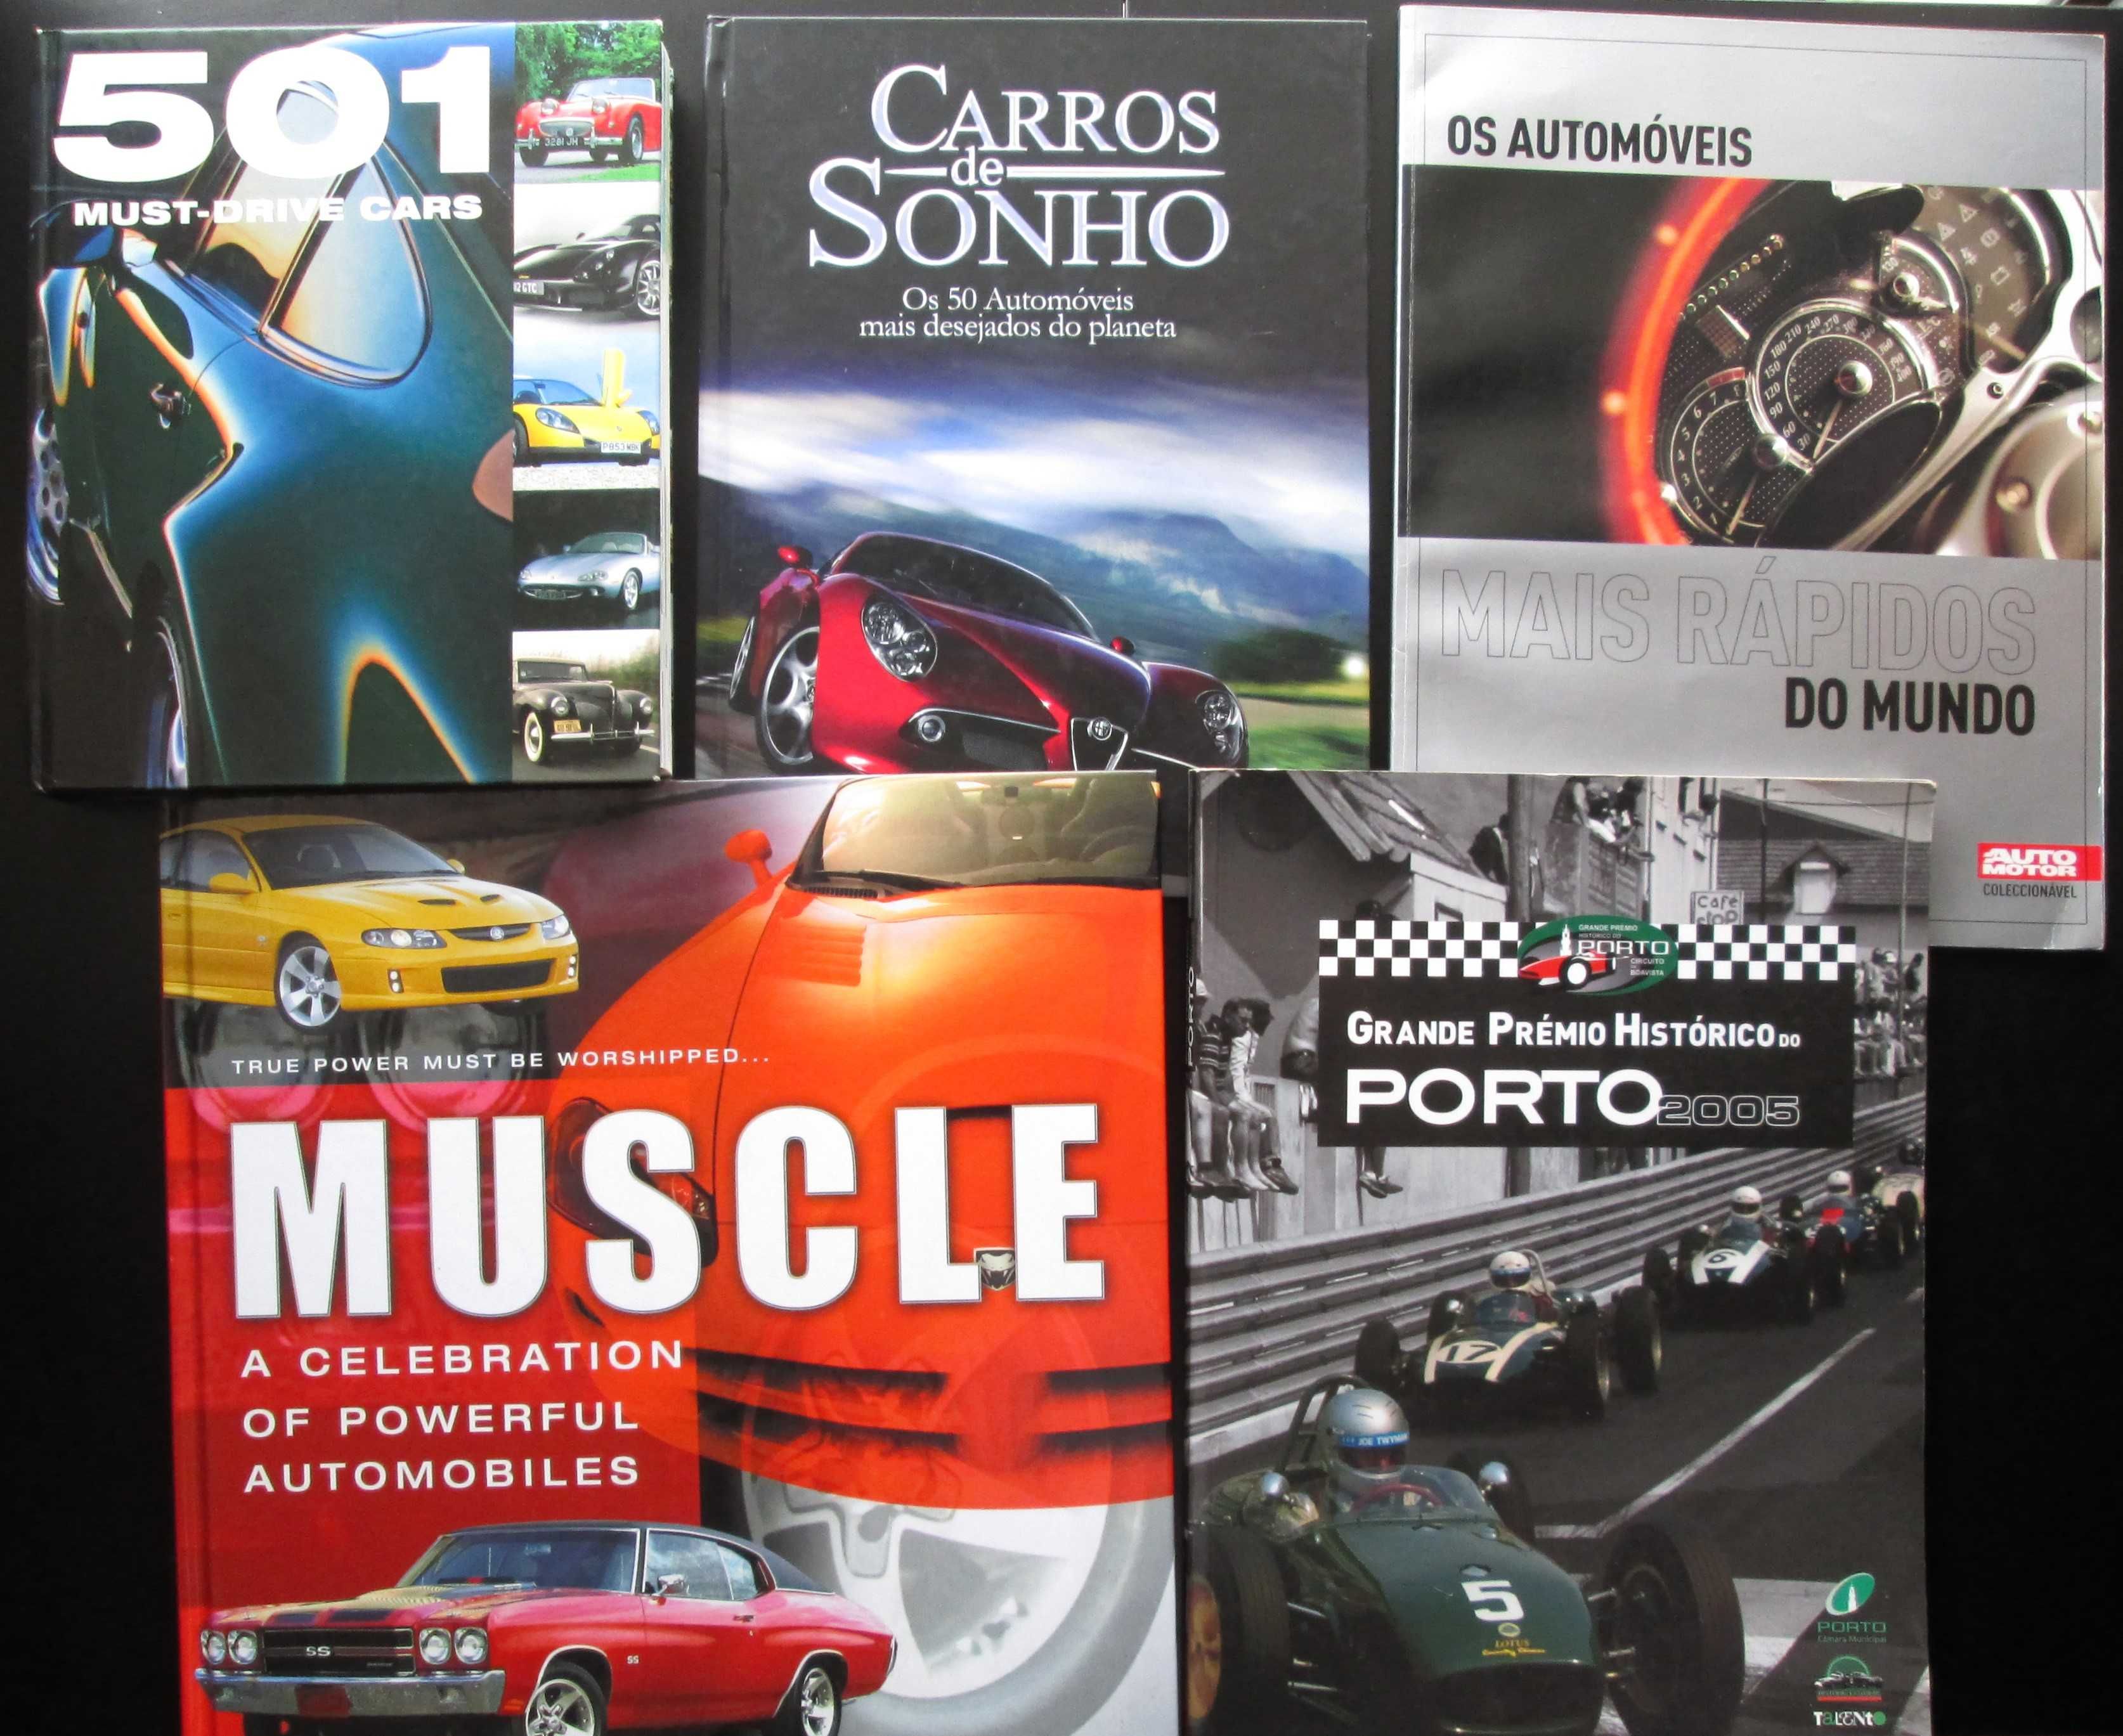 Muscle Cars; Grande Prémio Histórico do Porto; Carros de sonho